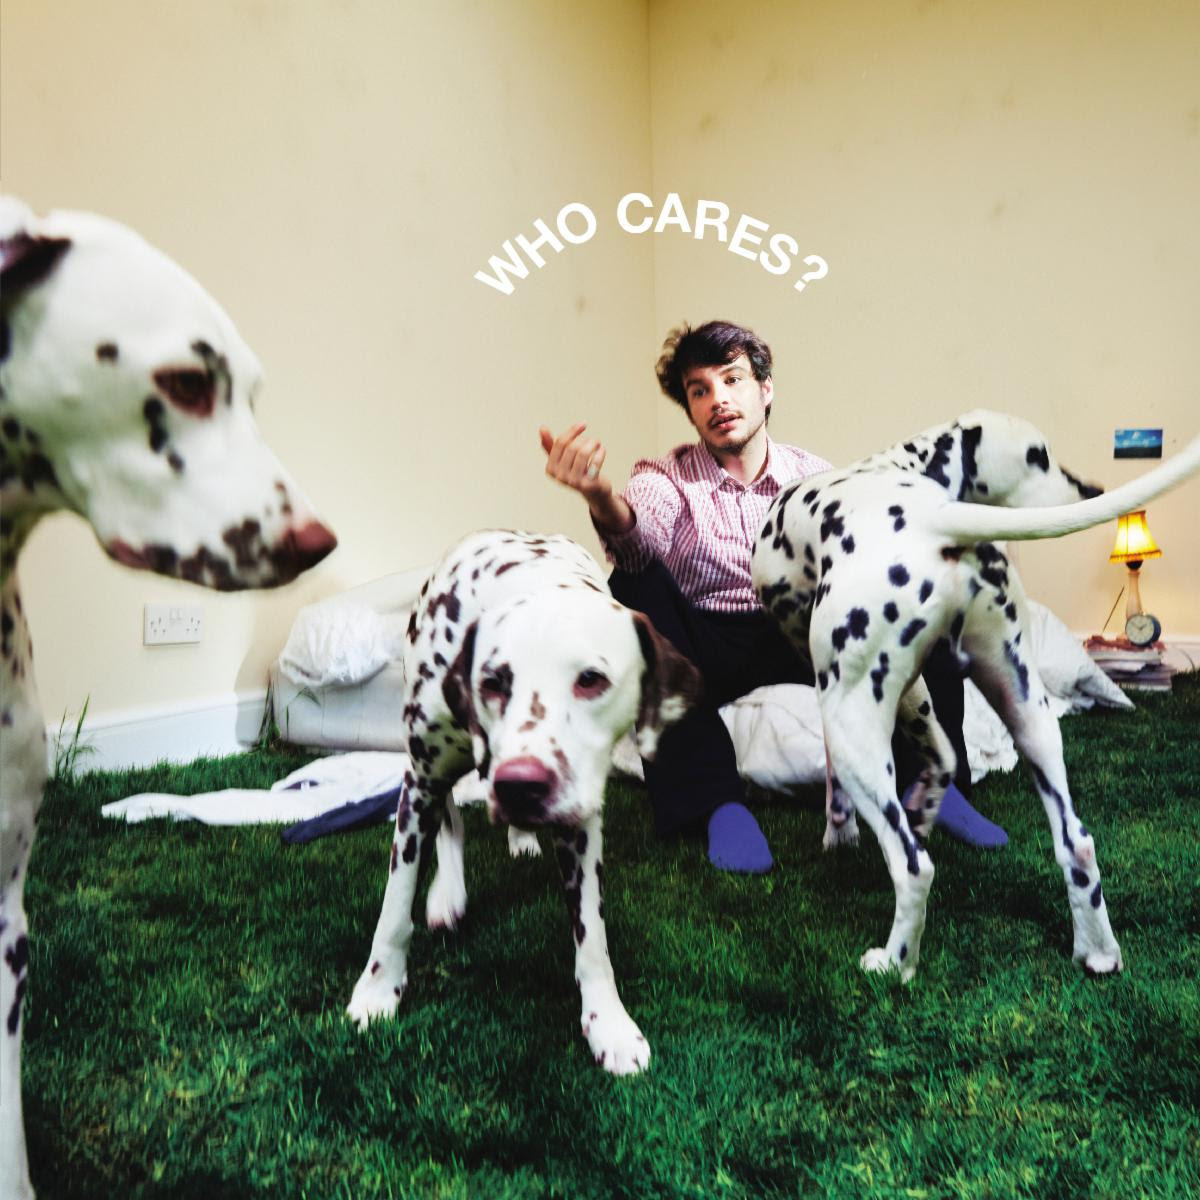 WHO CARES? album artwork